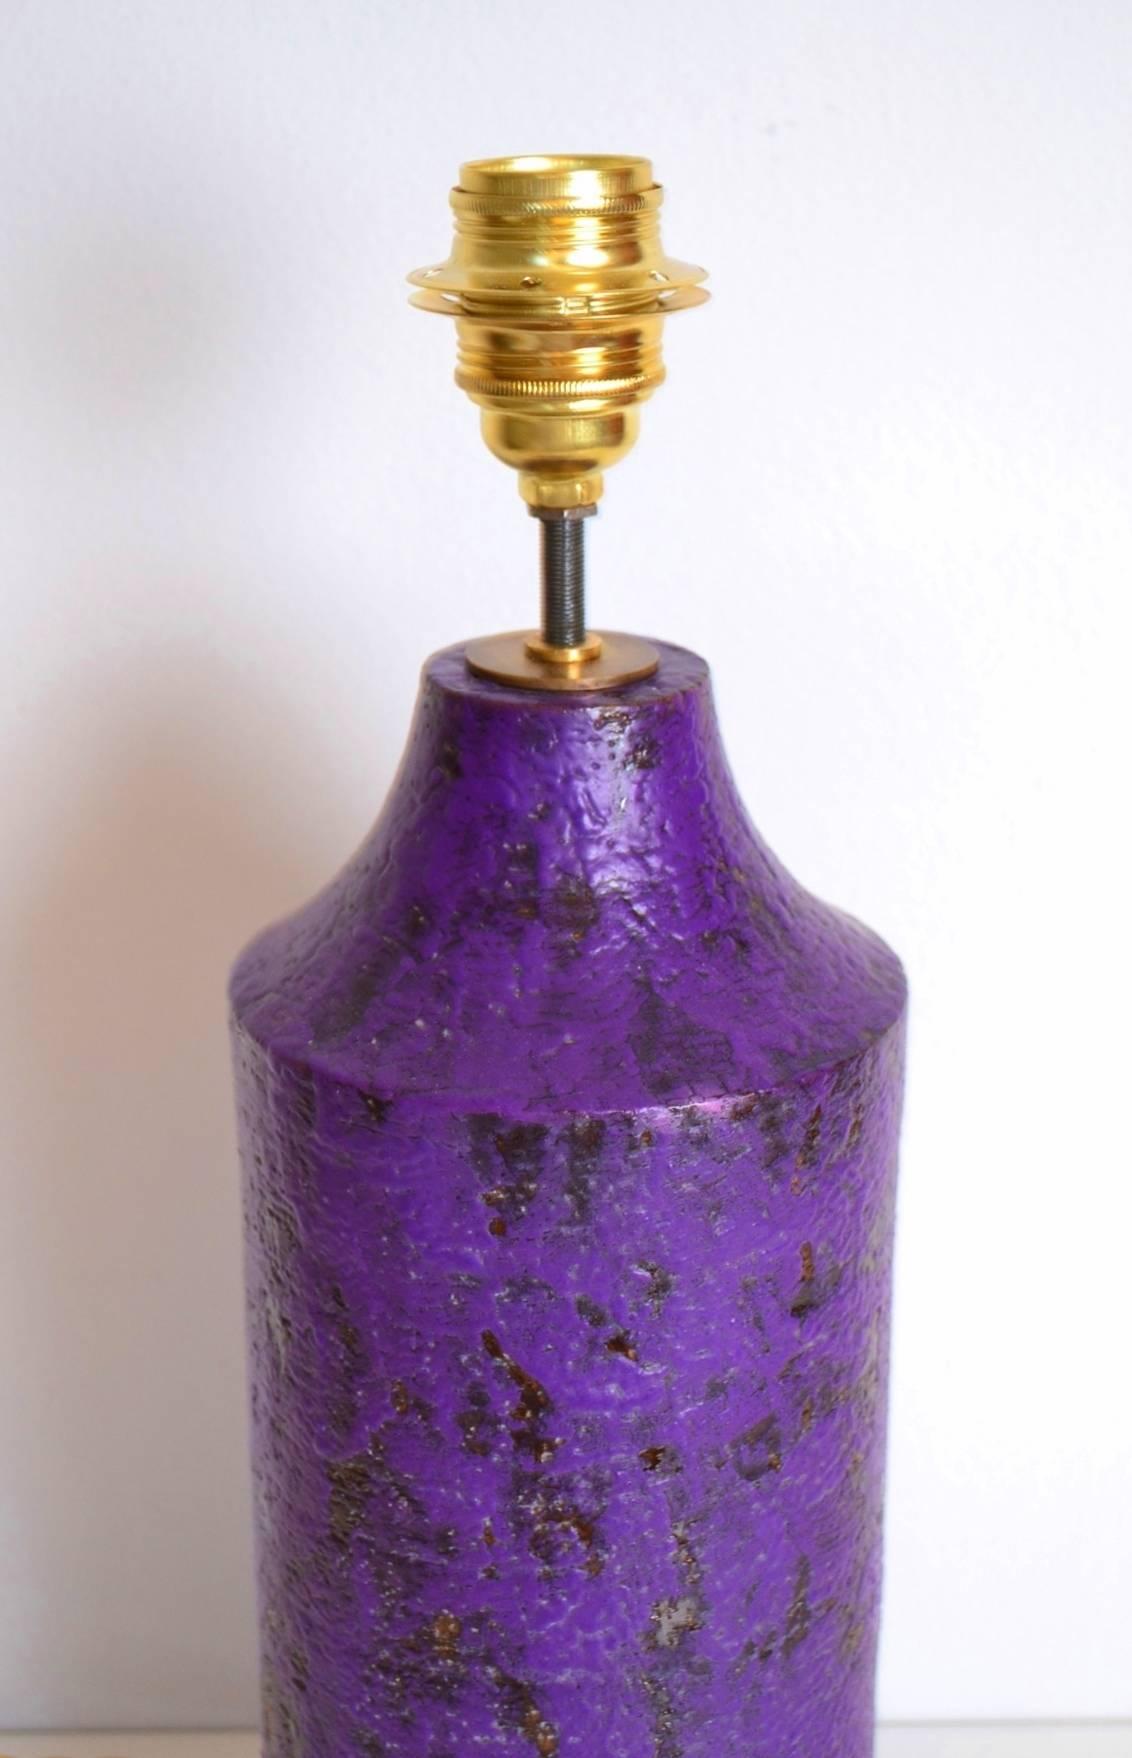 Italian Aldo Londi Ceramic Lamp Base for Bitossi, Italy, 1967-1970